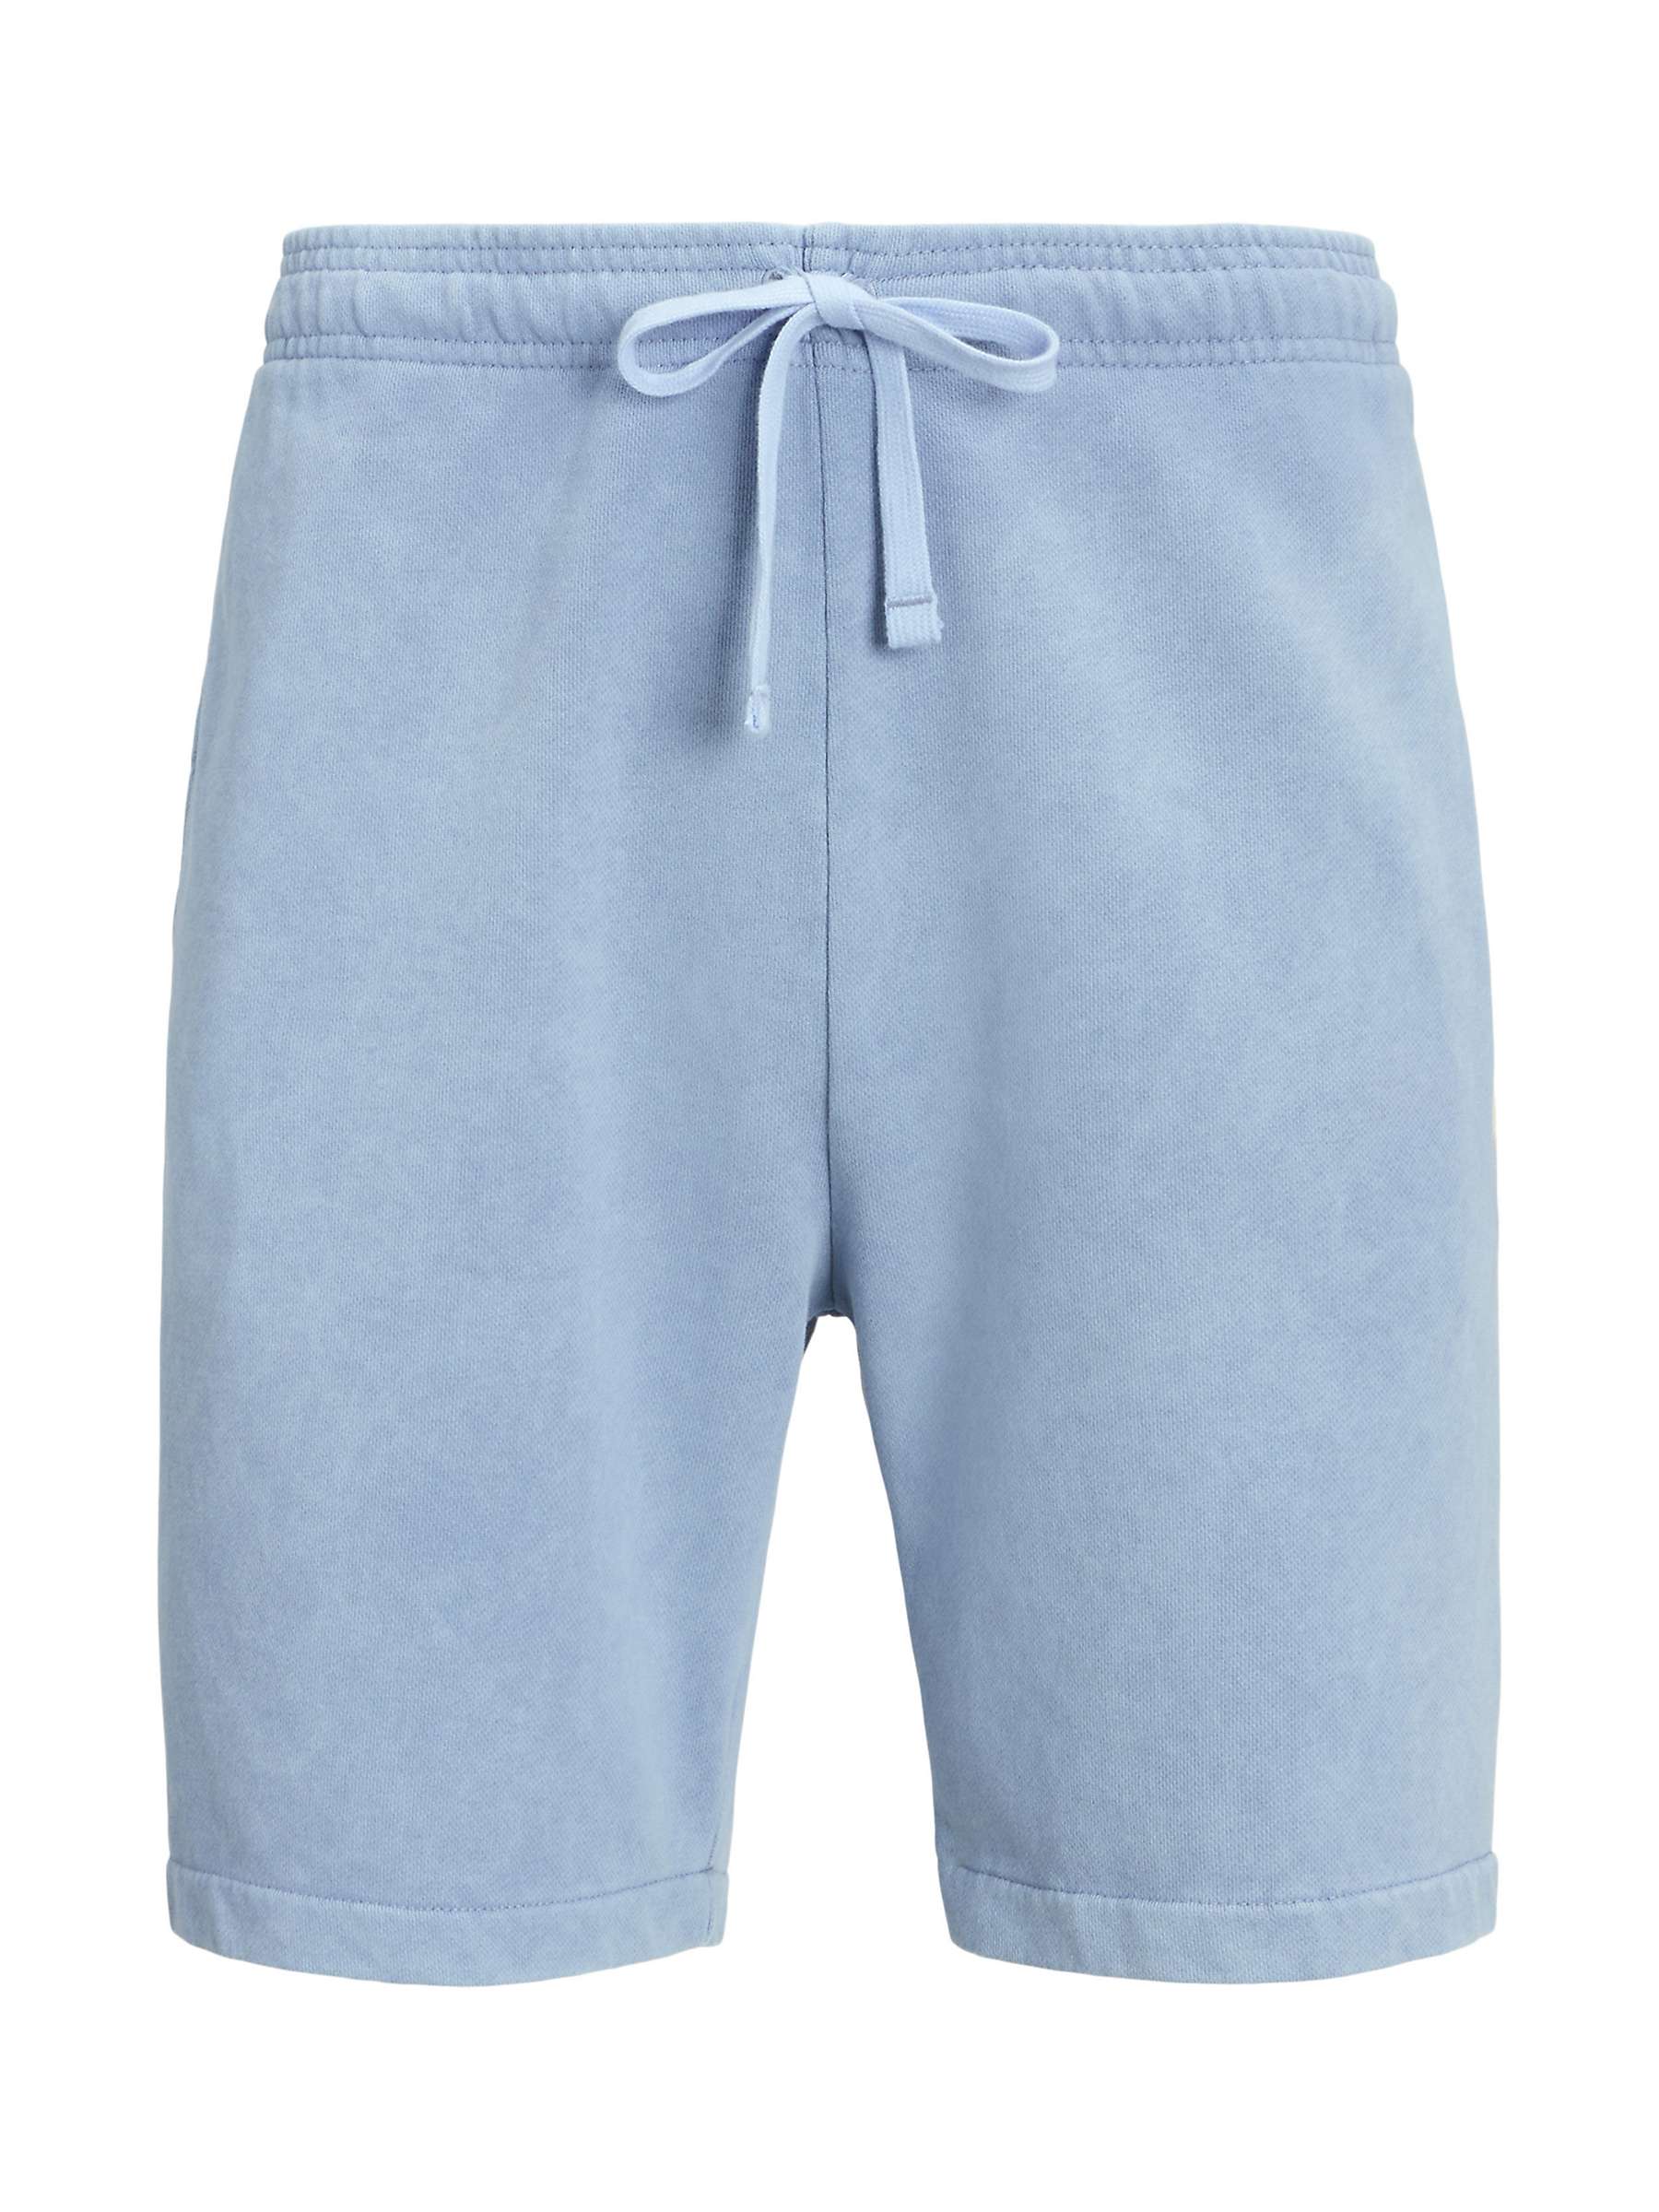 Buy Ralph Lauren Athletic Cotton Shorts, Channel Blue Online at johnlewis.com